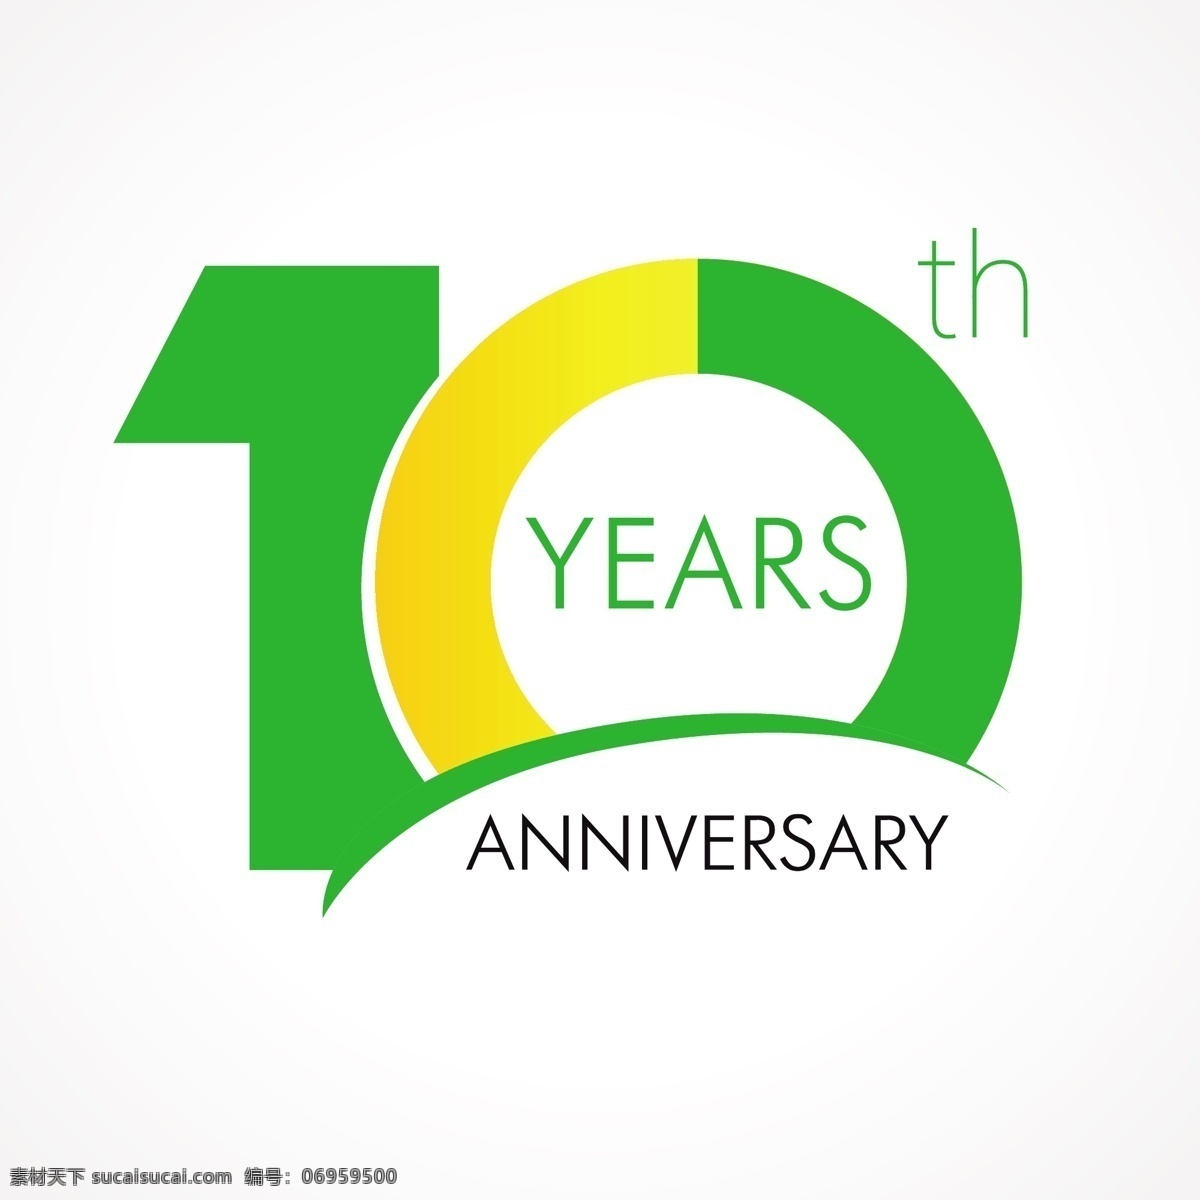 10周年庆典 周年庆数字 十周年 10周年 数字标签 周年庆标签 周年庆典 扁平化元素 圆形图标 白色